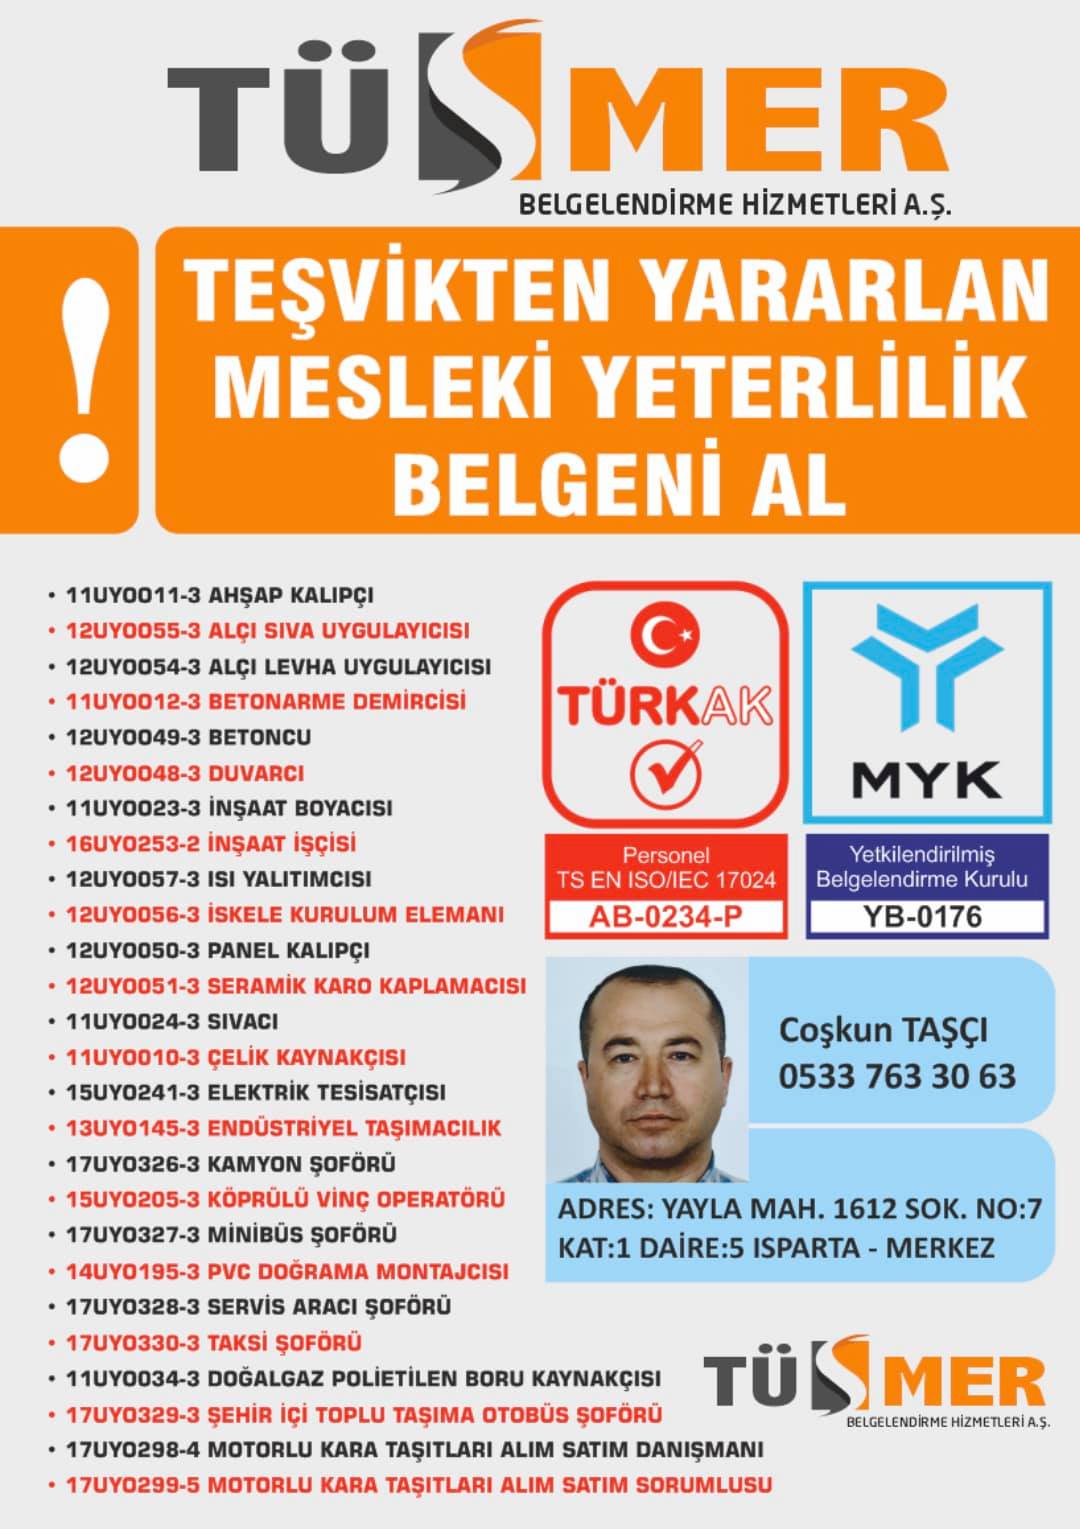 MYK MESLEKİ YETERLİLİK BELGESİ Yenimahalle Beykoz İstanbul